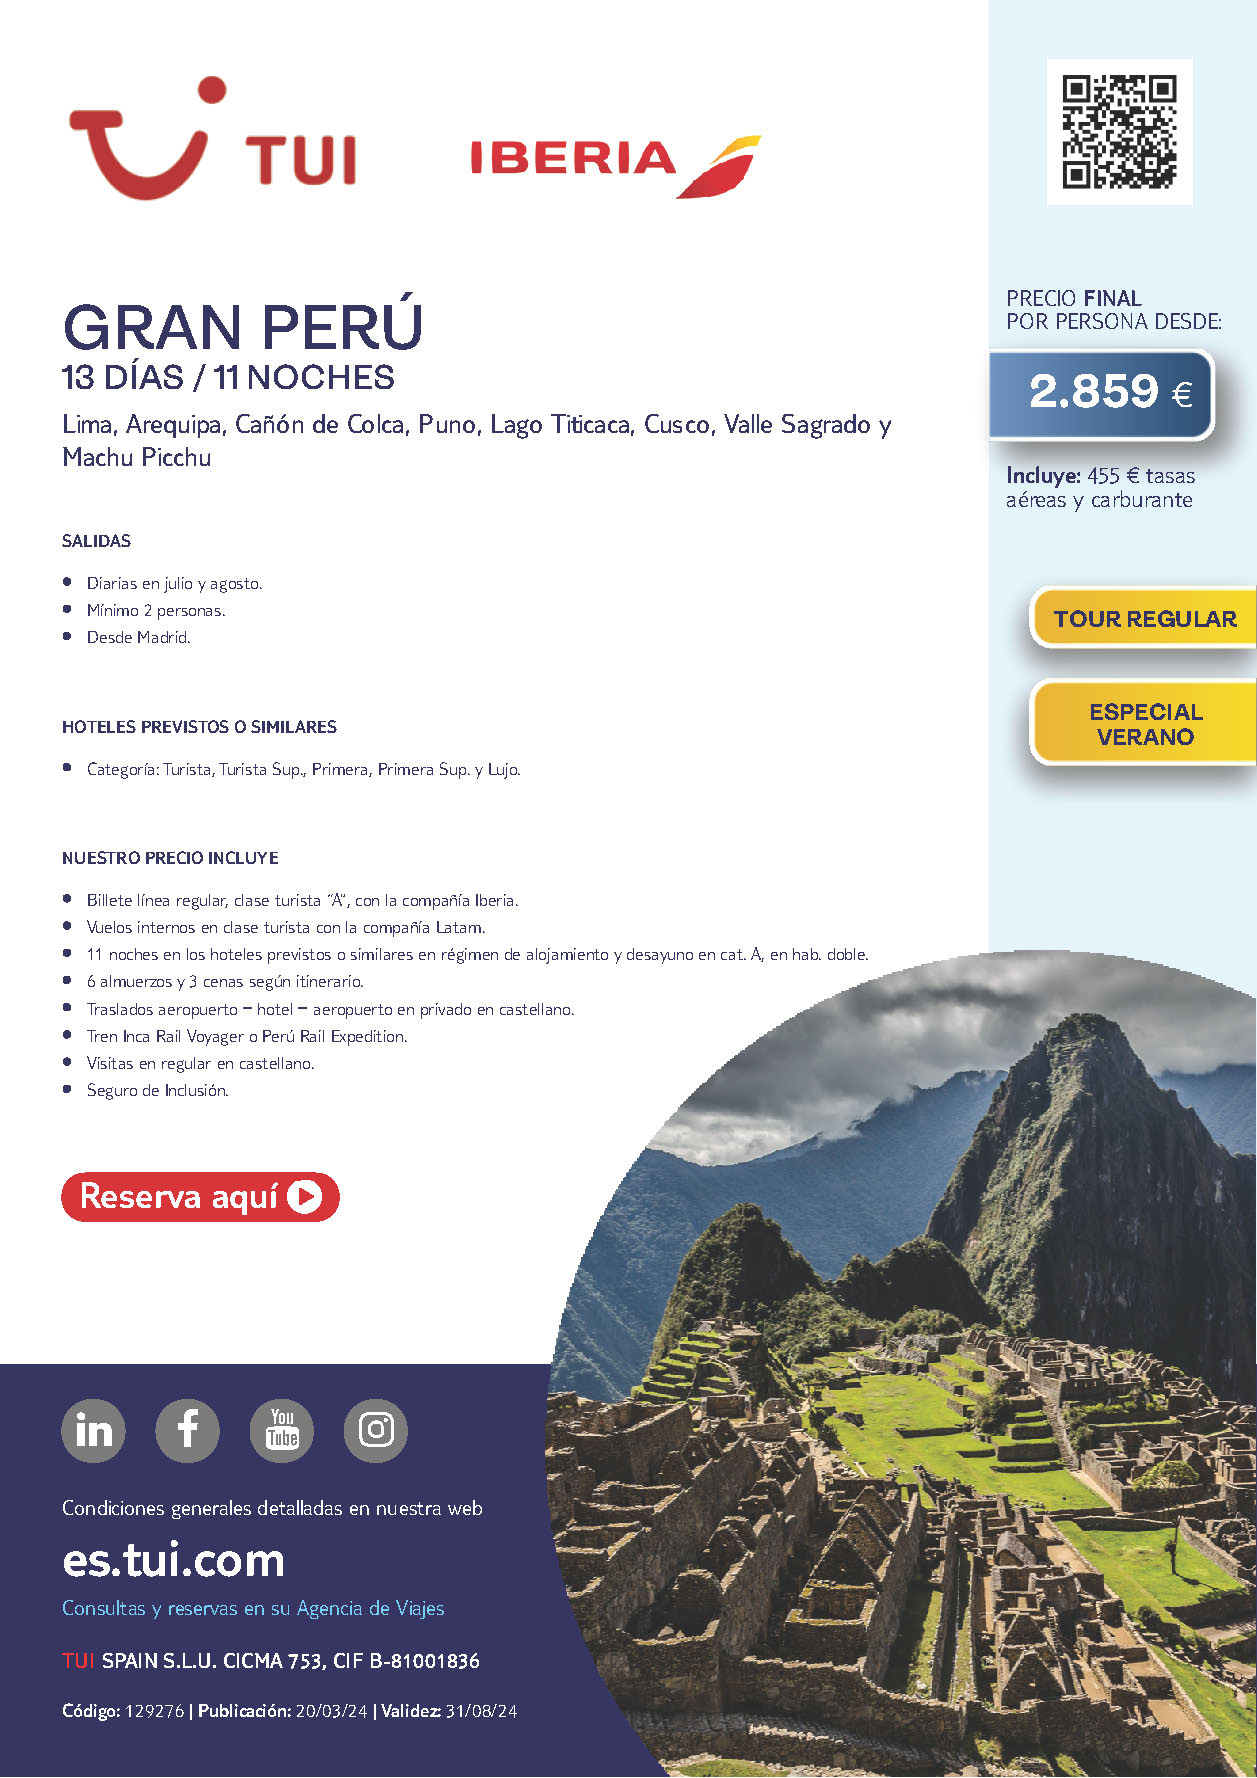 Oferta TUI circuito Peru Gran Peru 13 dias salidas Julio y Agosto desde Madrid vuelos Iberia